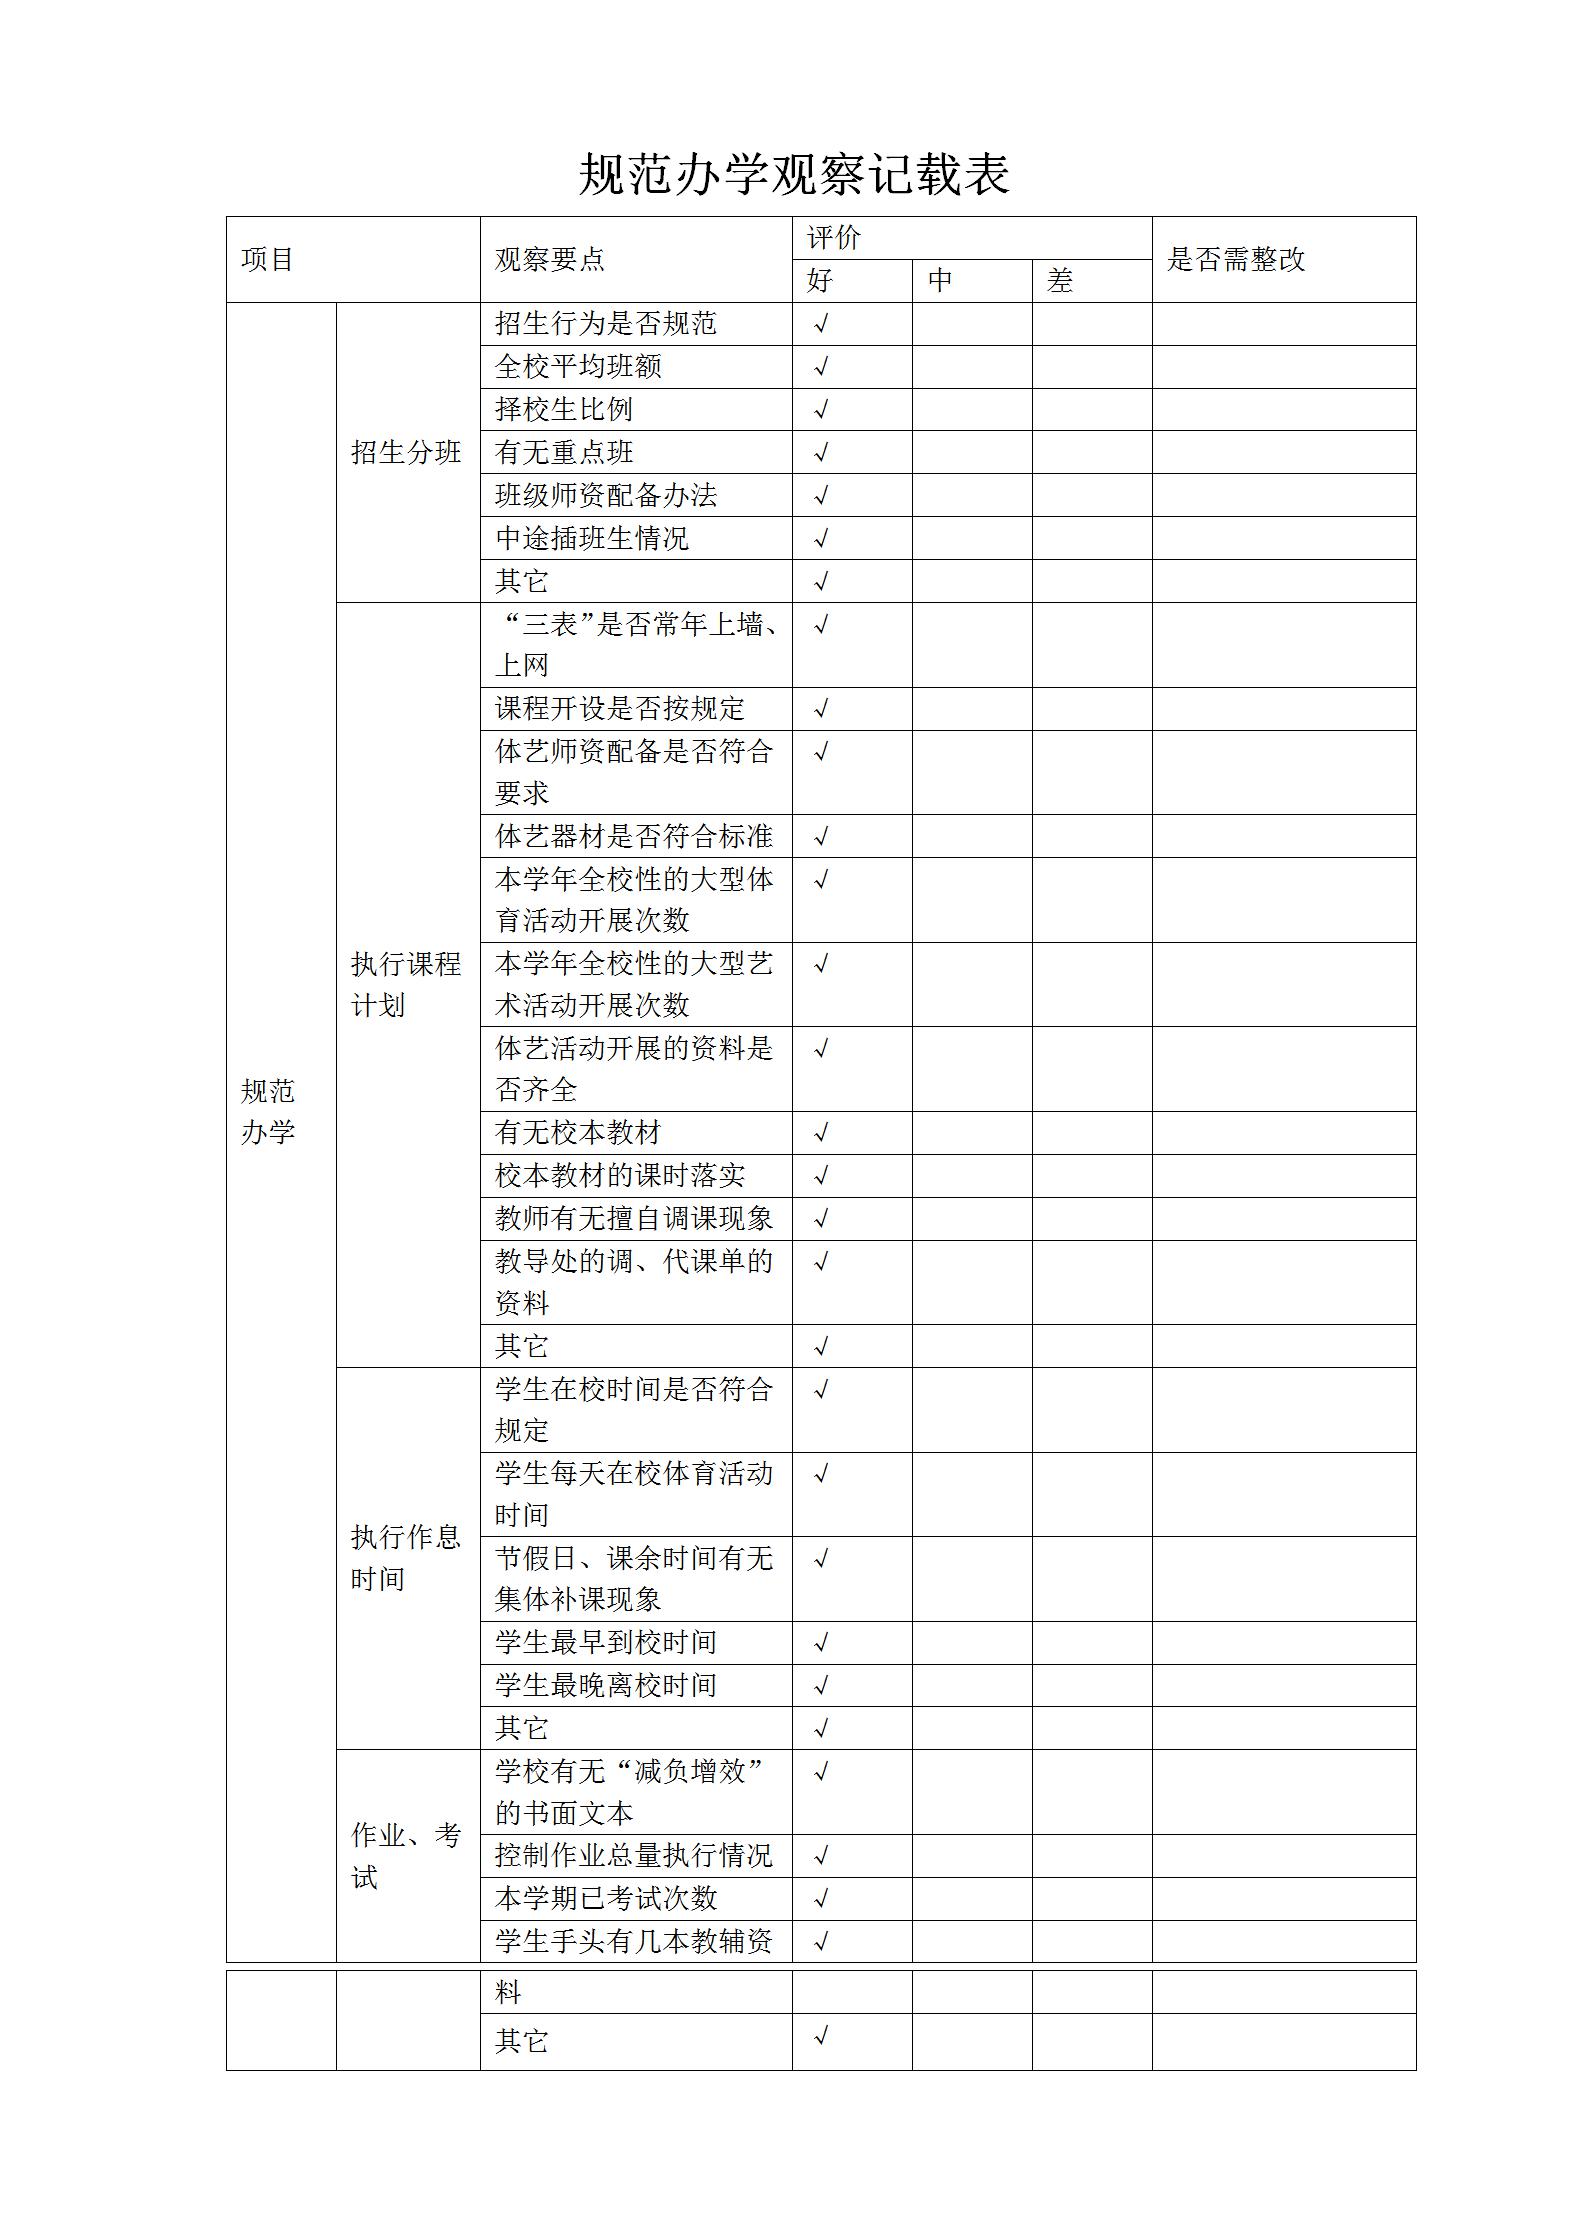 2019.9.7（城北小学）规范办学观察记载表.jpg